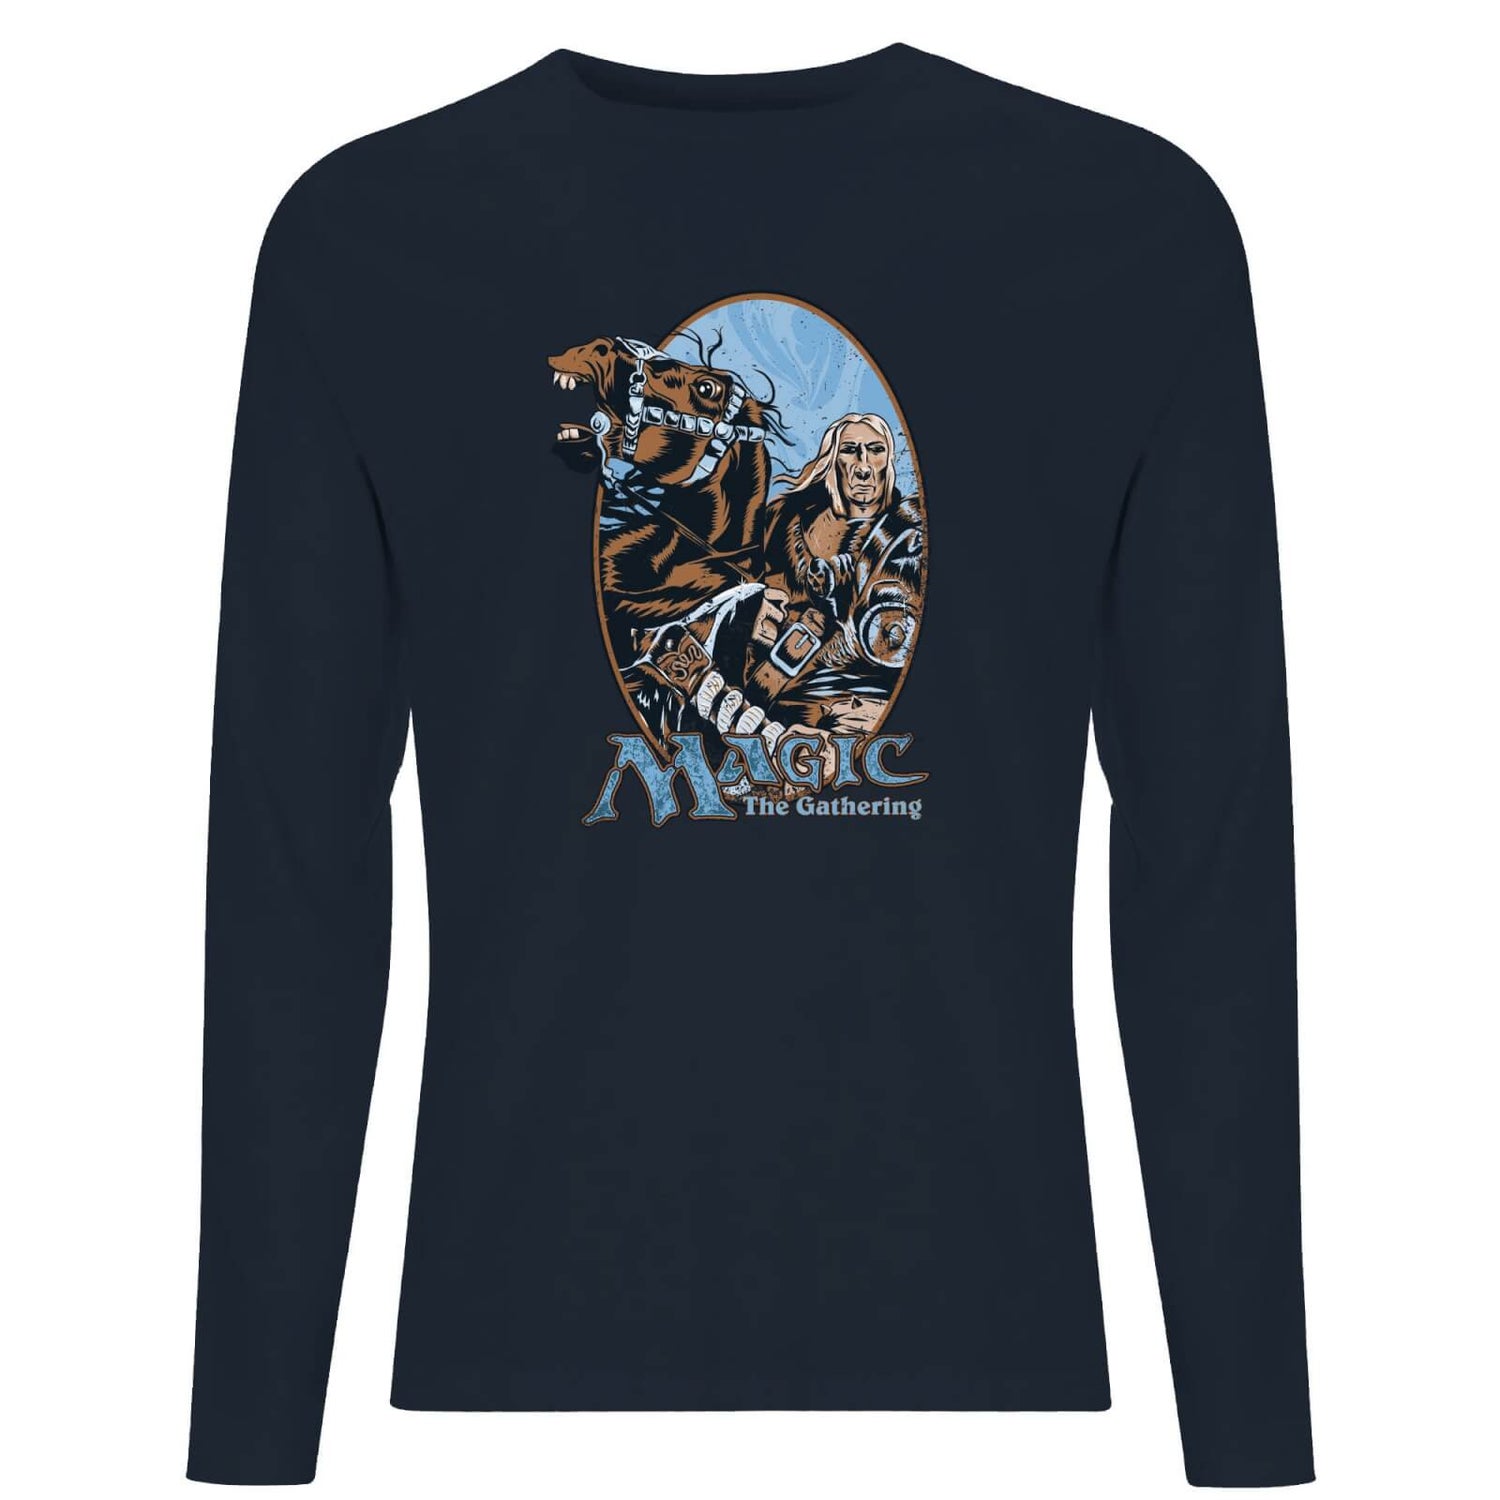 Magic the Gathering Retro Unisexe T-Shirt Manches Longues - Bleu Marine